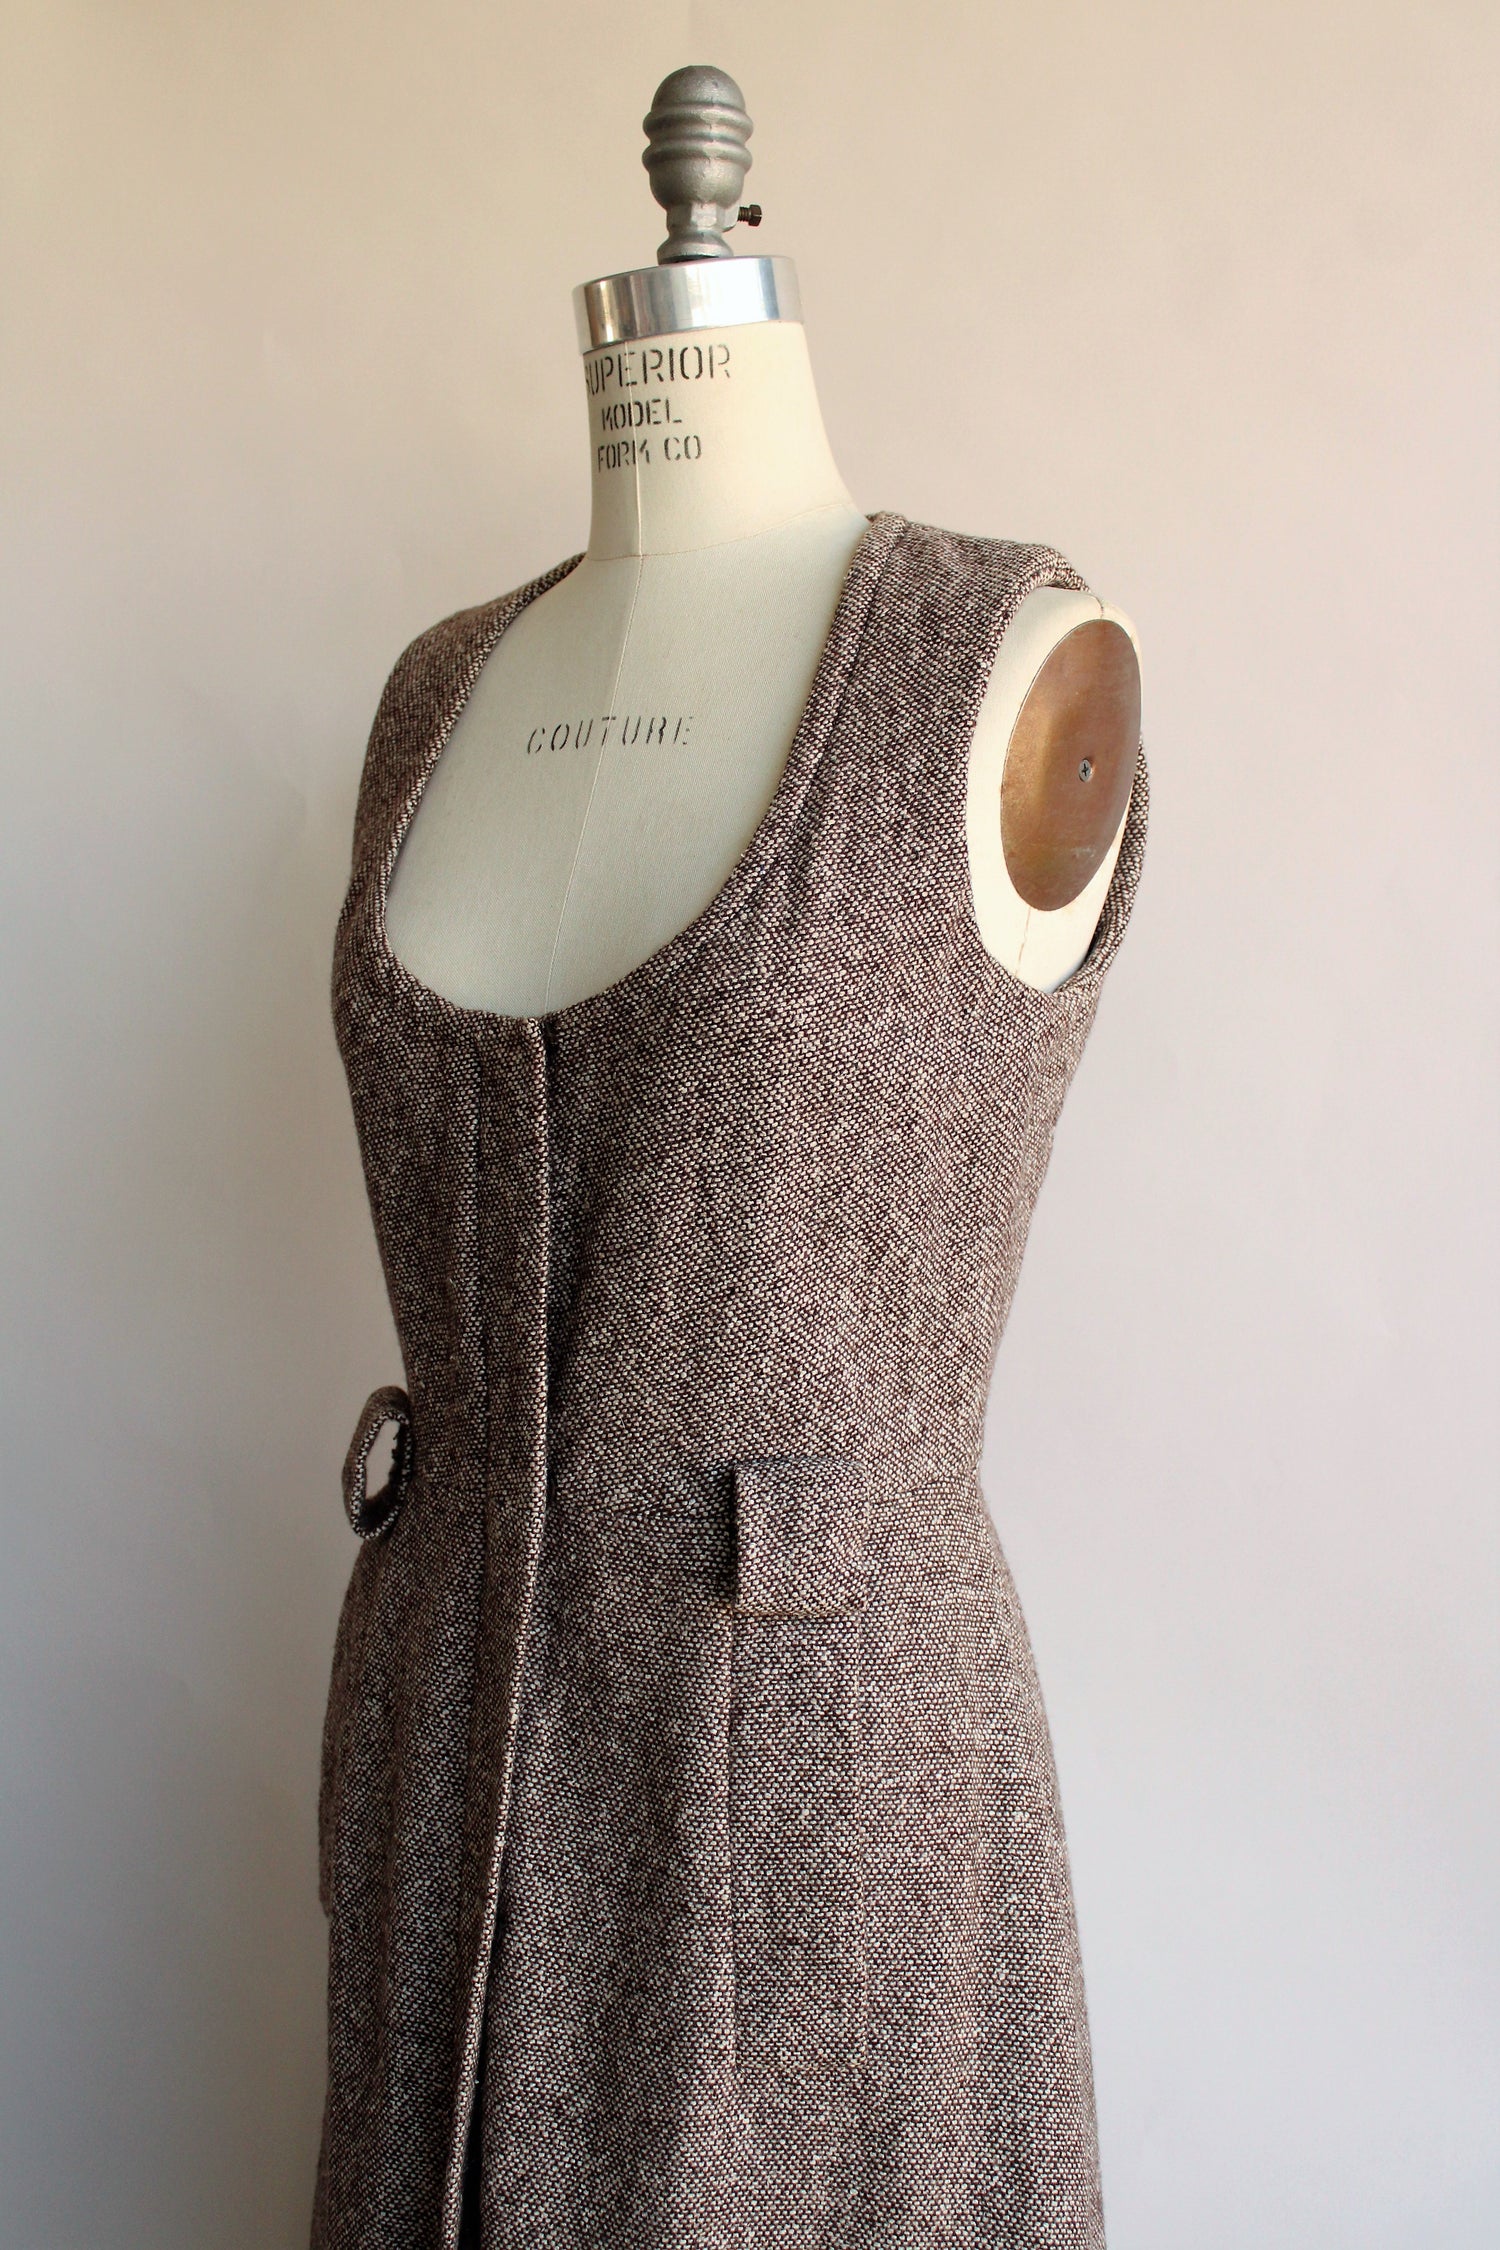 Vintage Late 1960s Brown Tweed Dress